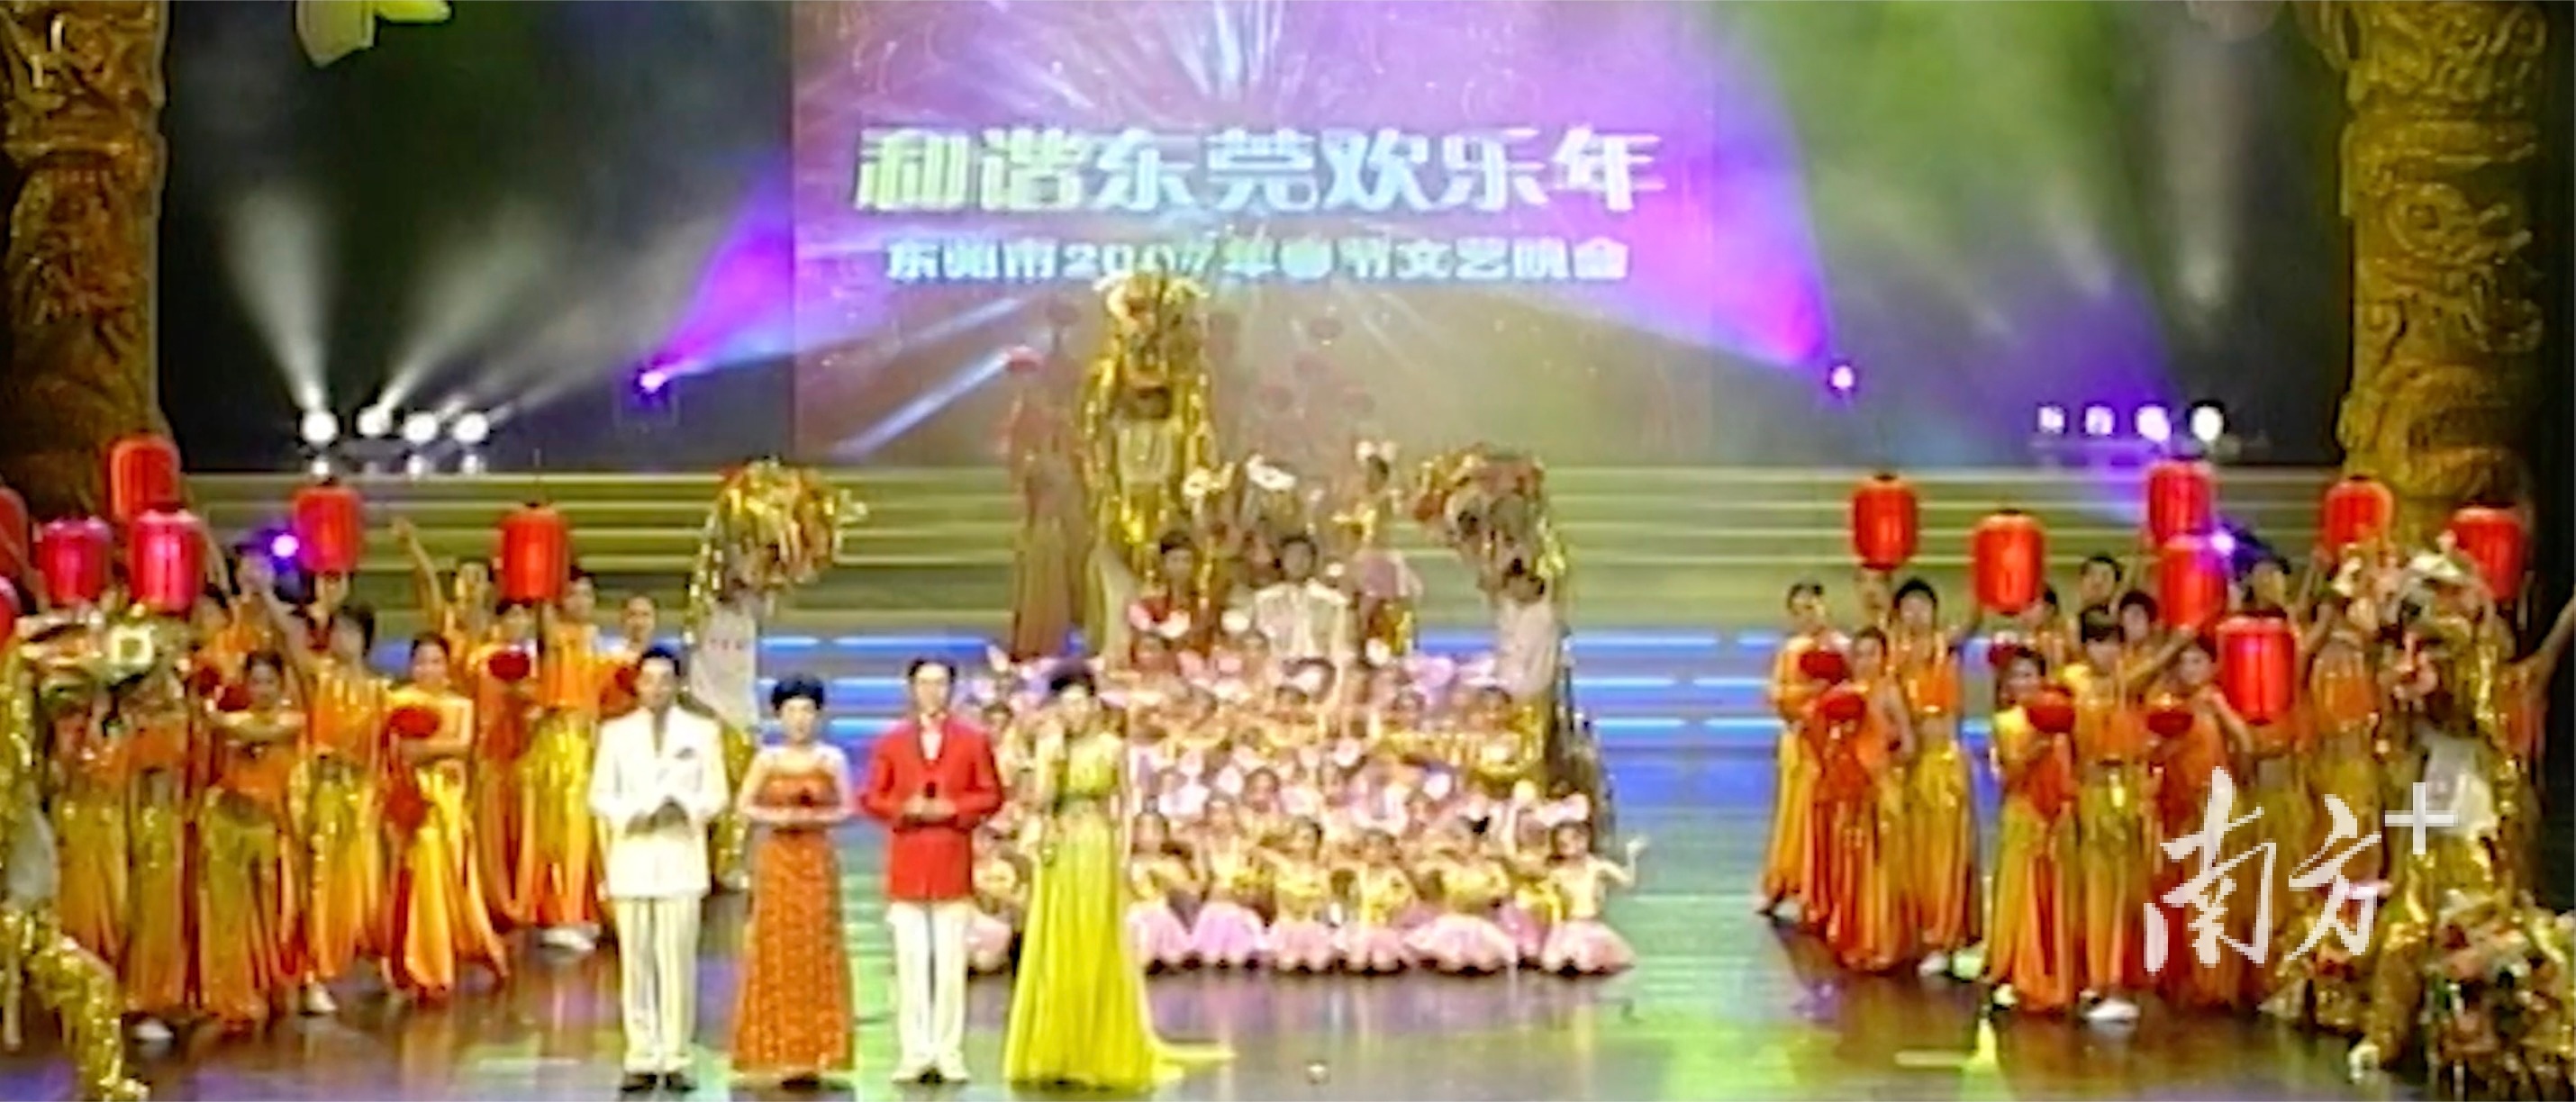 2007年，“和谐东莞欢乐年”首届电视春晚举办。